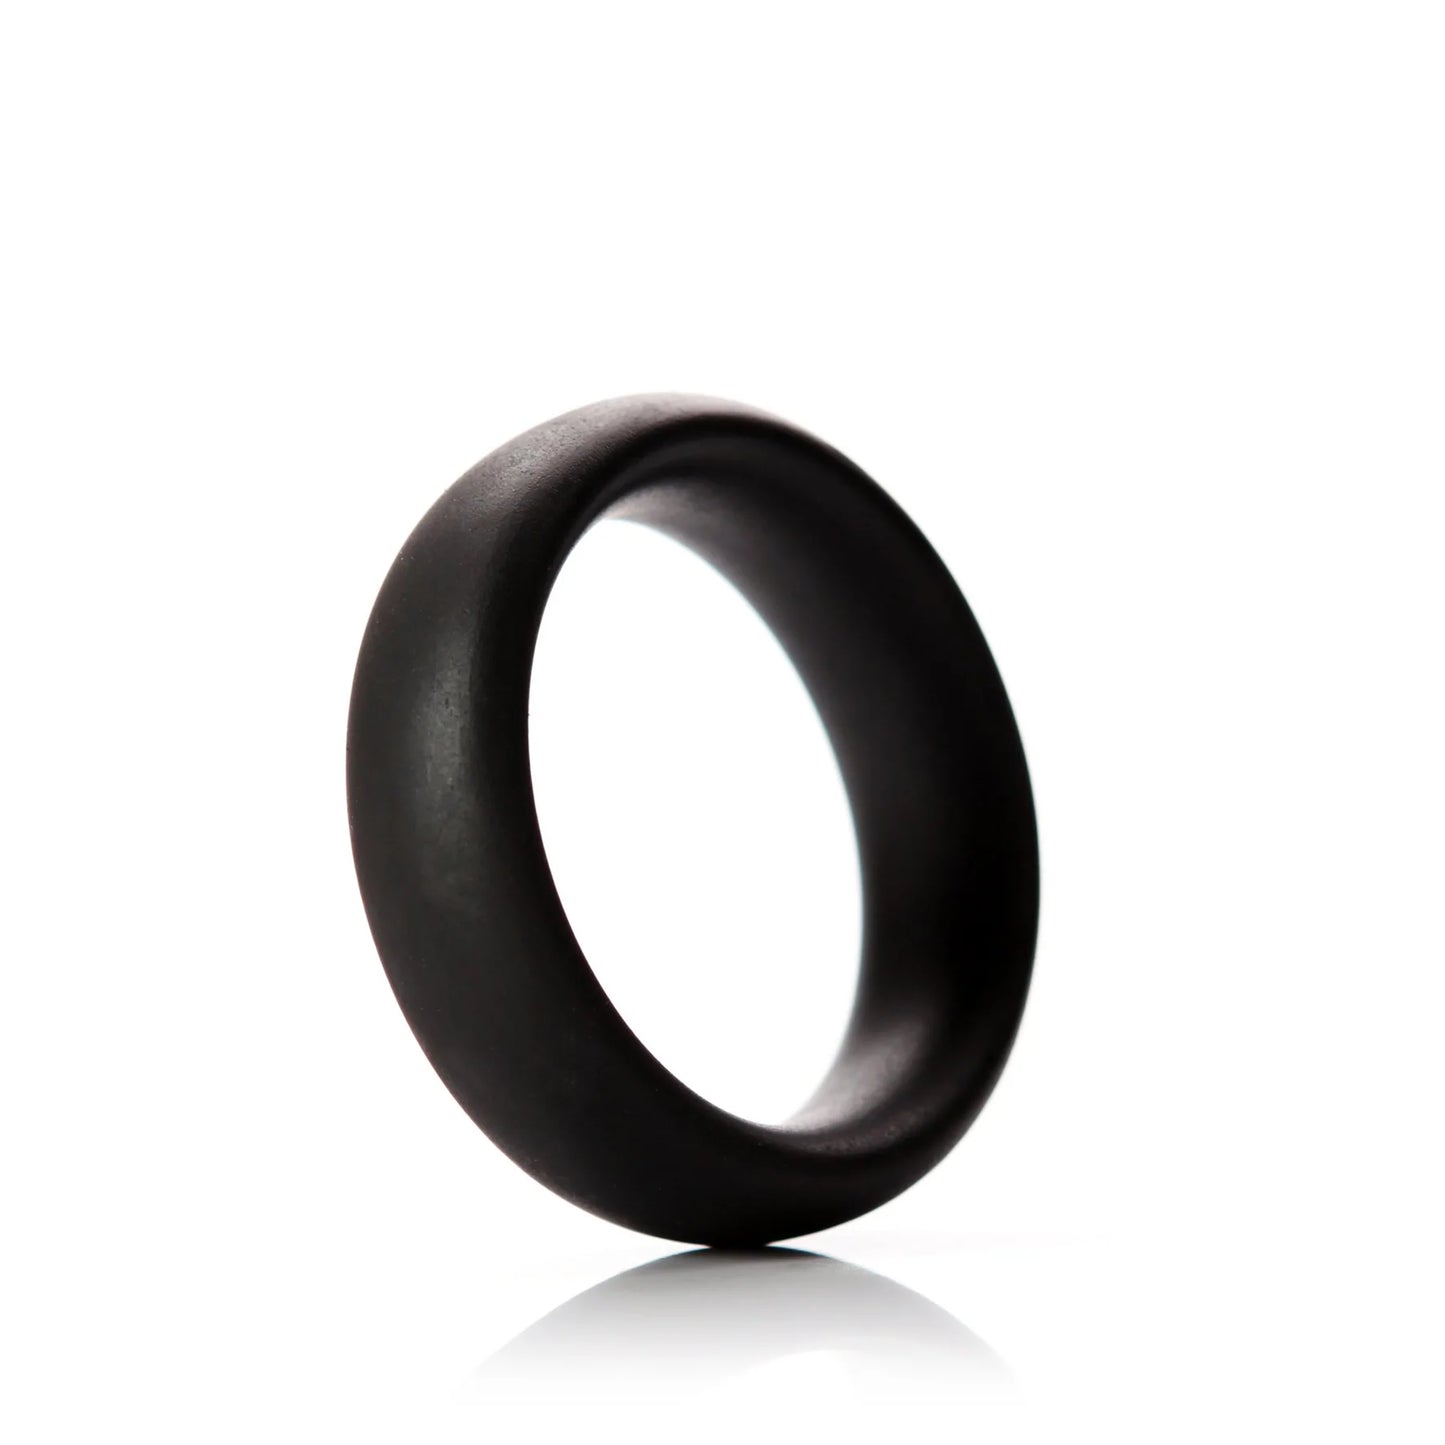 1.5" C-Ring by Tantus